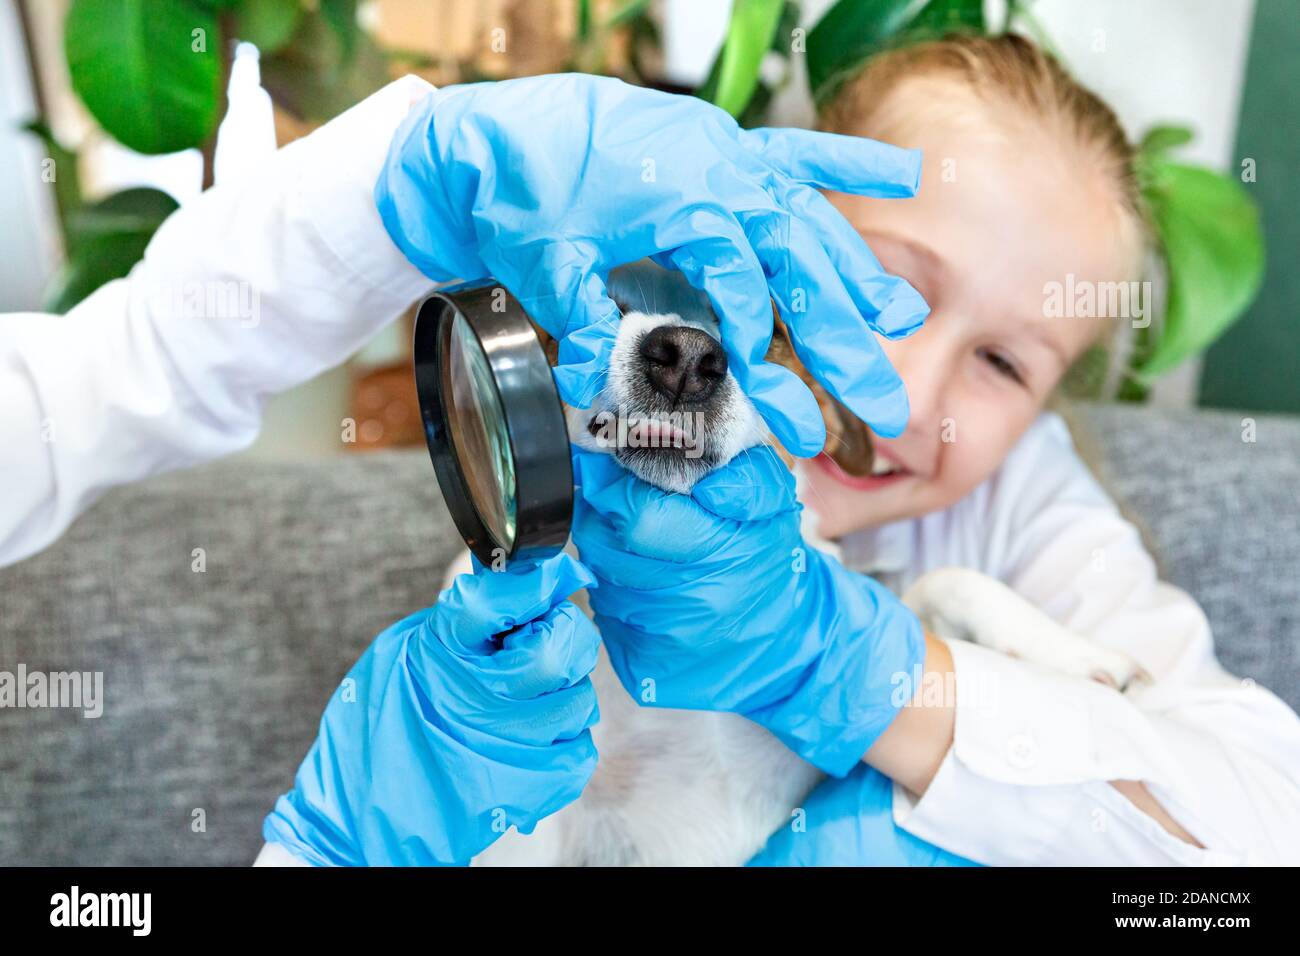 Les enfants de 8-9 ans en gants médicaux bleus examinent les dents du chien Jack Russell sous une loupe. Travaux scientifiques sur la biologie, la zoologie, h Banque D'Images